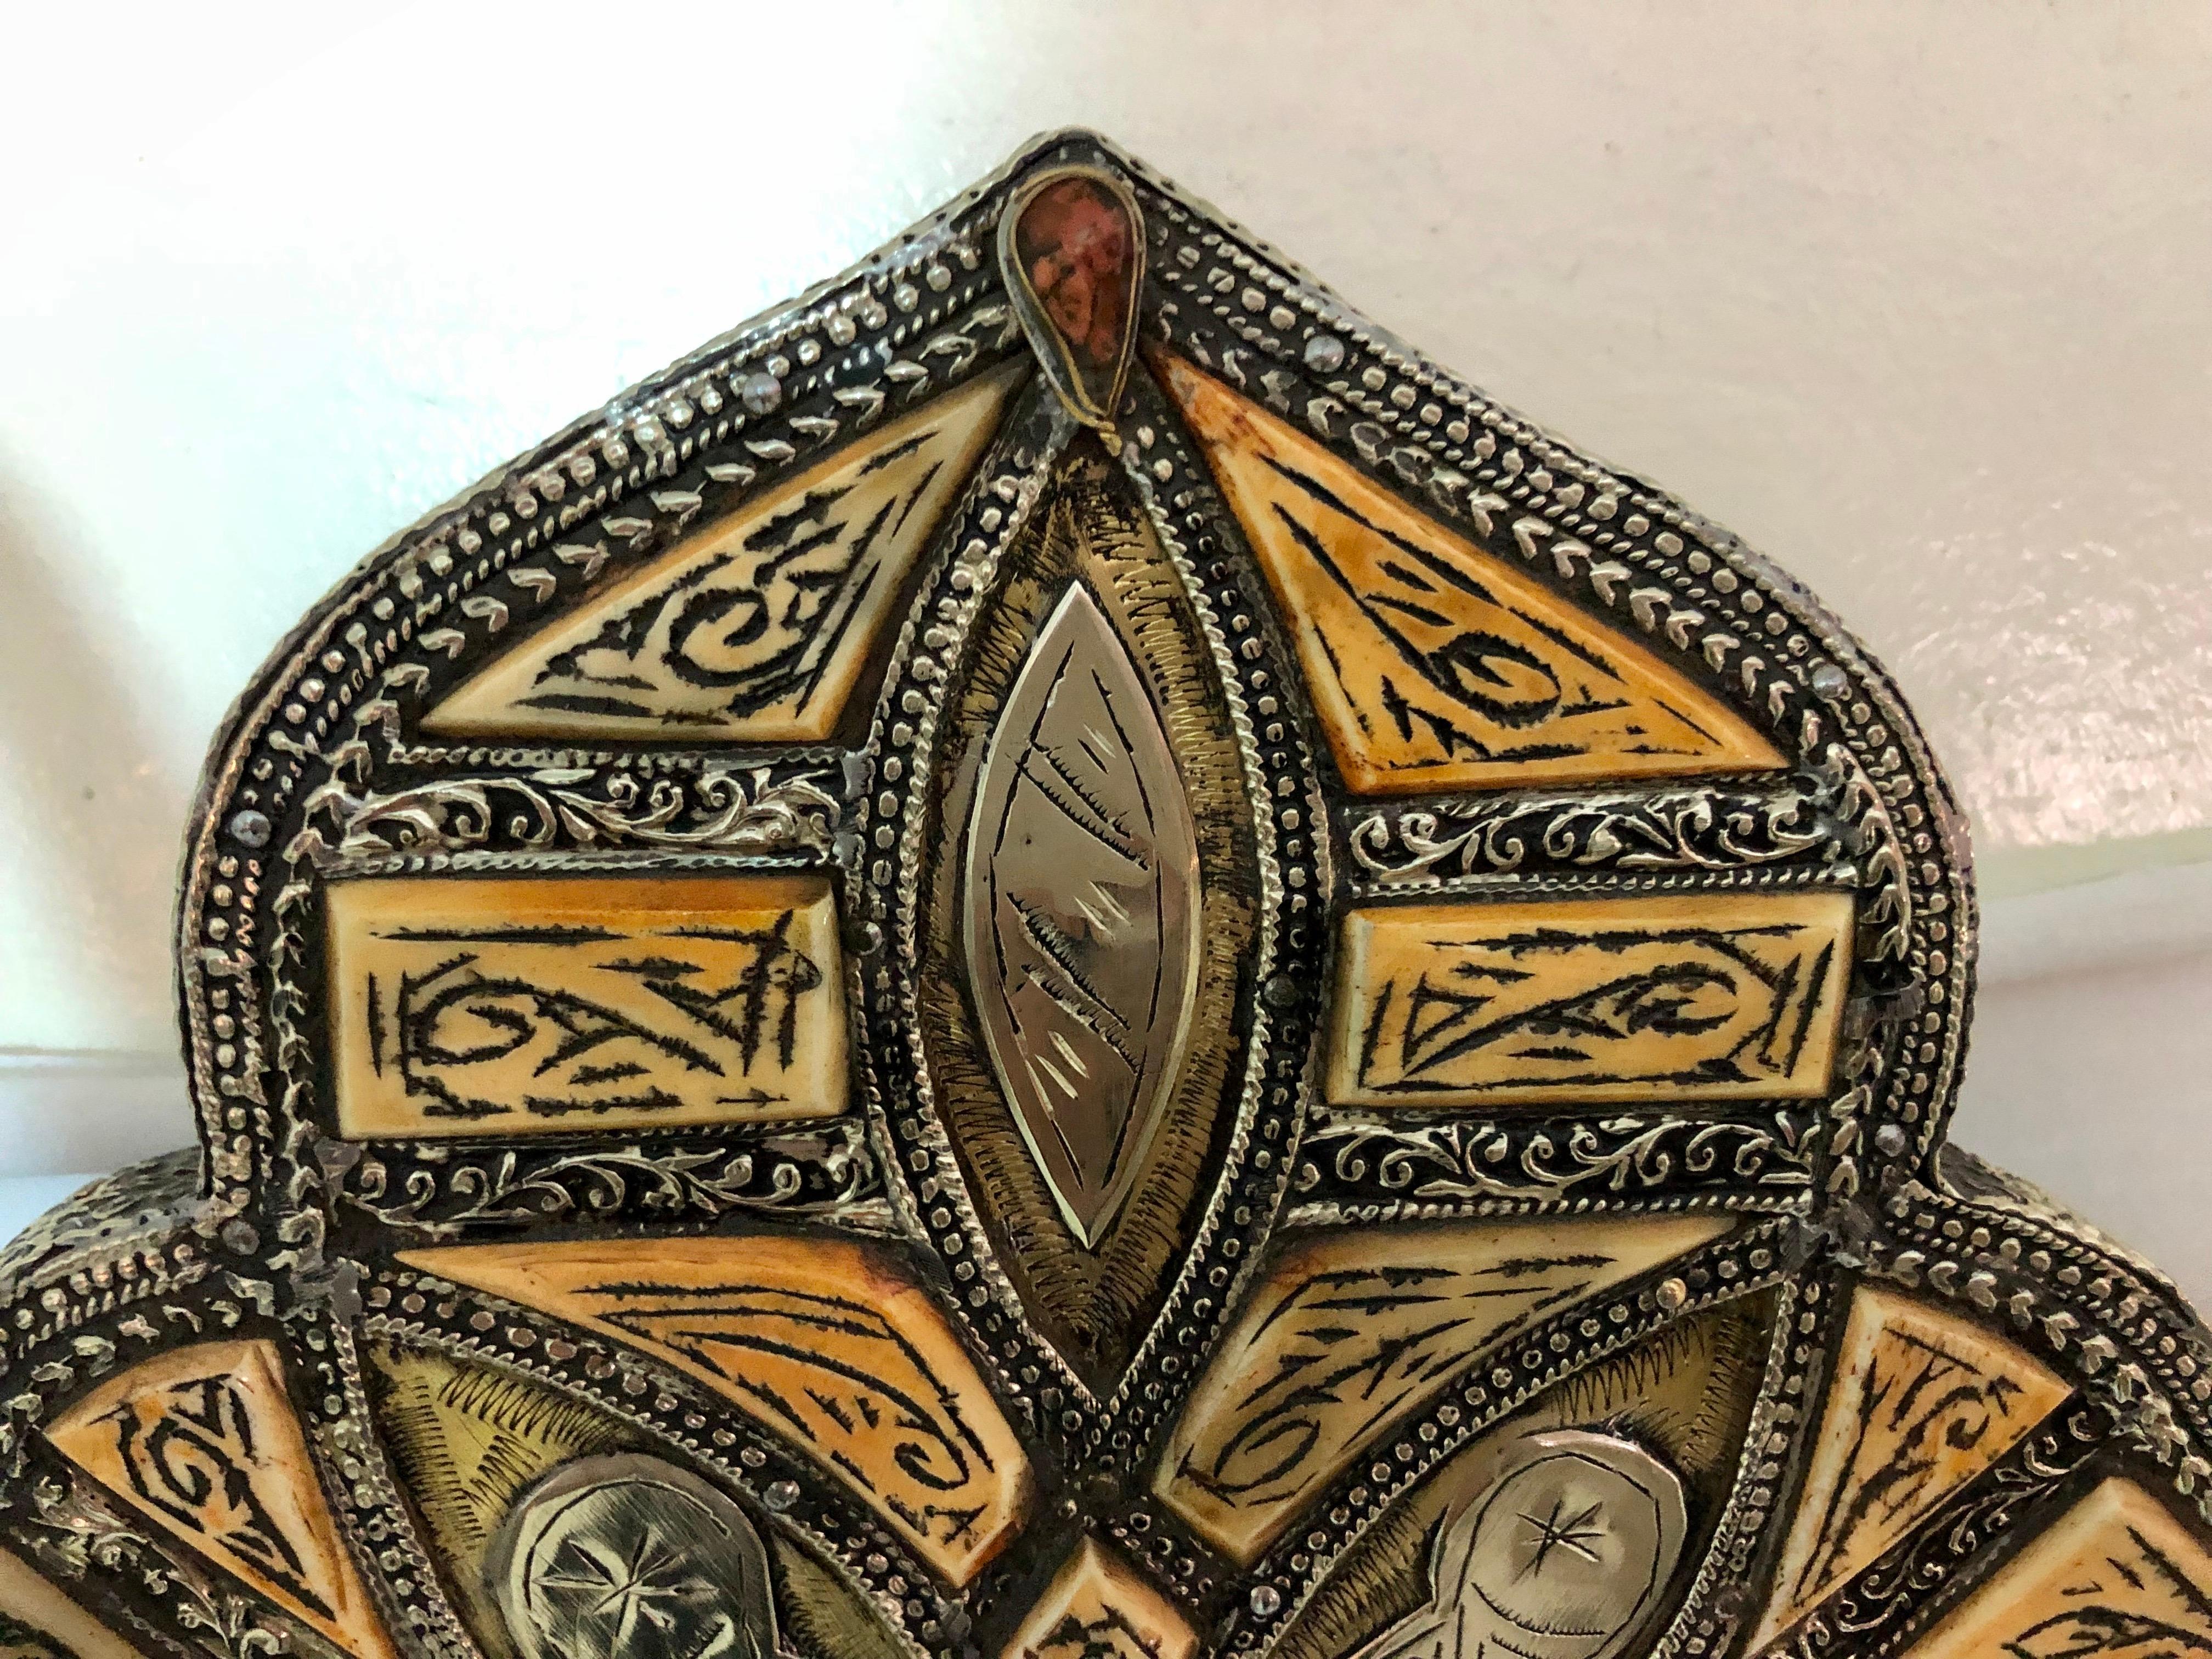 Miroir de courtoisie ou miroir mural marocain antique et arqué, fabriqué à la main en os naturel et gravé de magnifiques motifs tribaux. Le cadre du miroir est incrusté dans du laiton qui présente une belle décoloration due au vieillissement. Tout